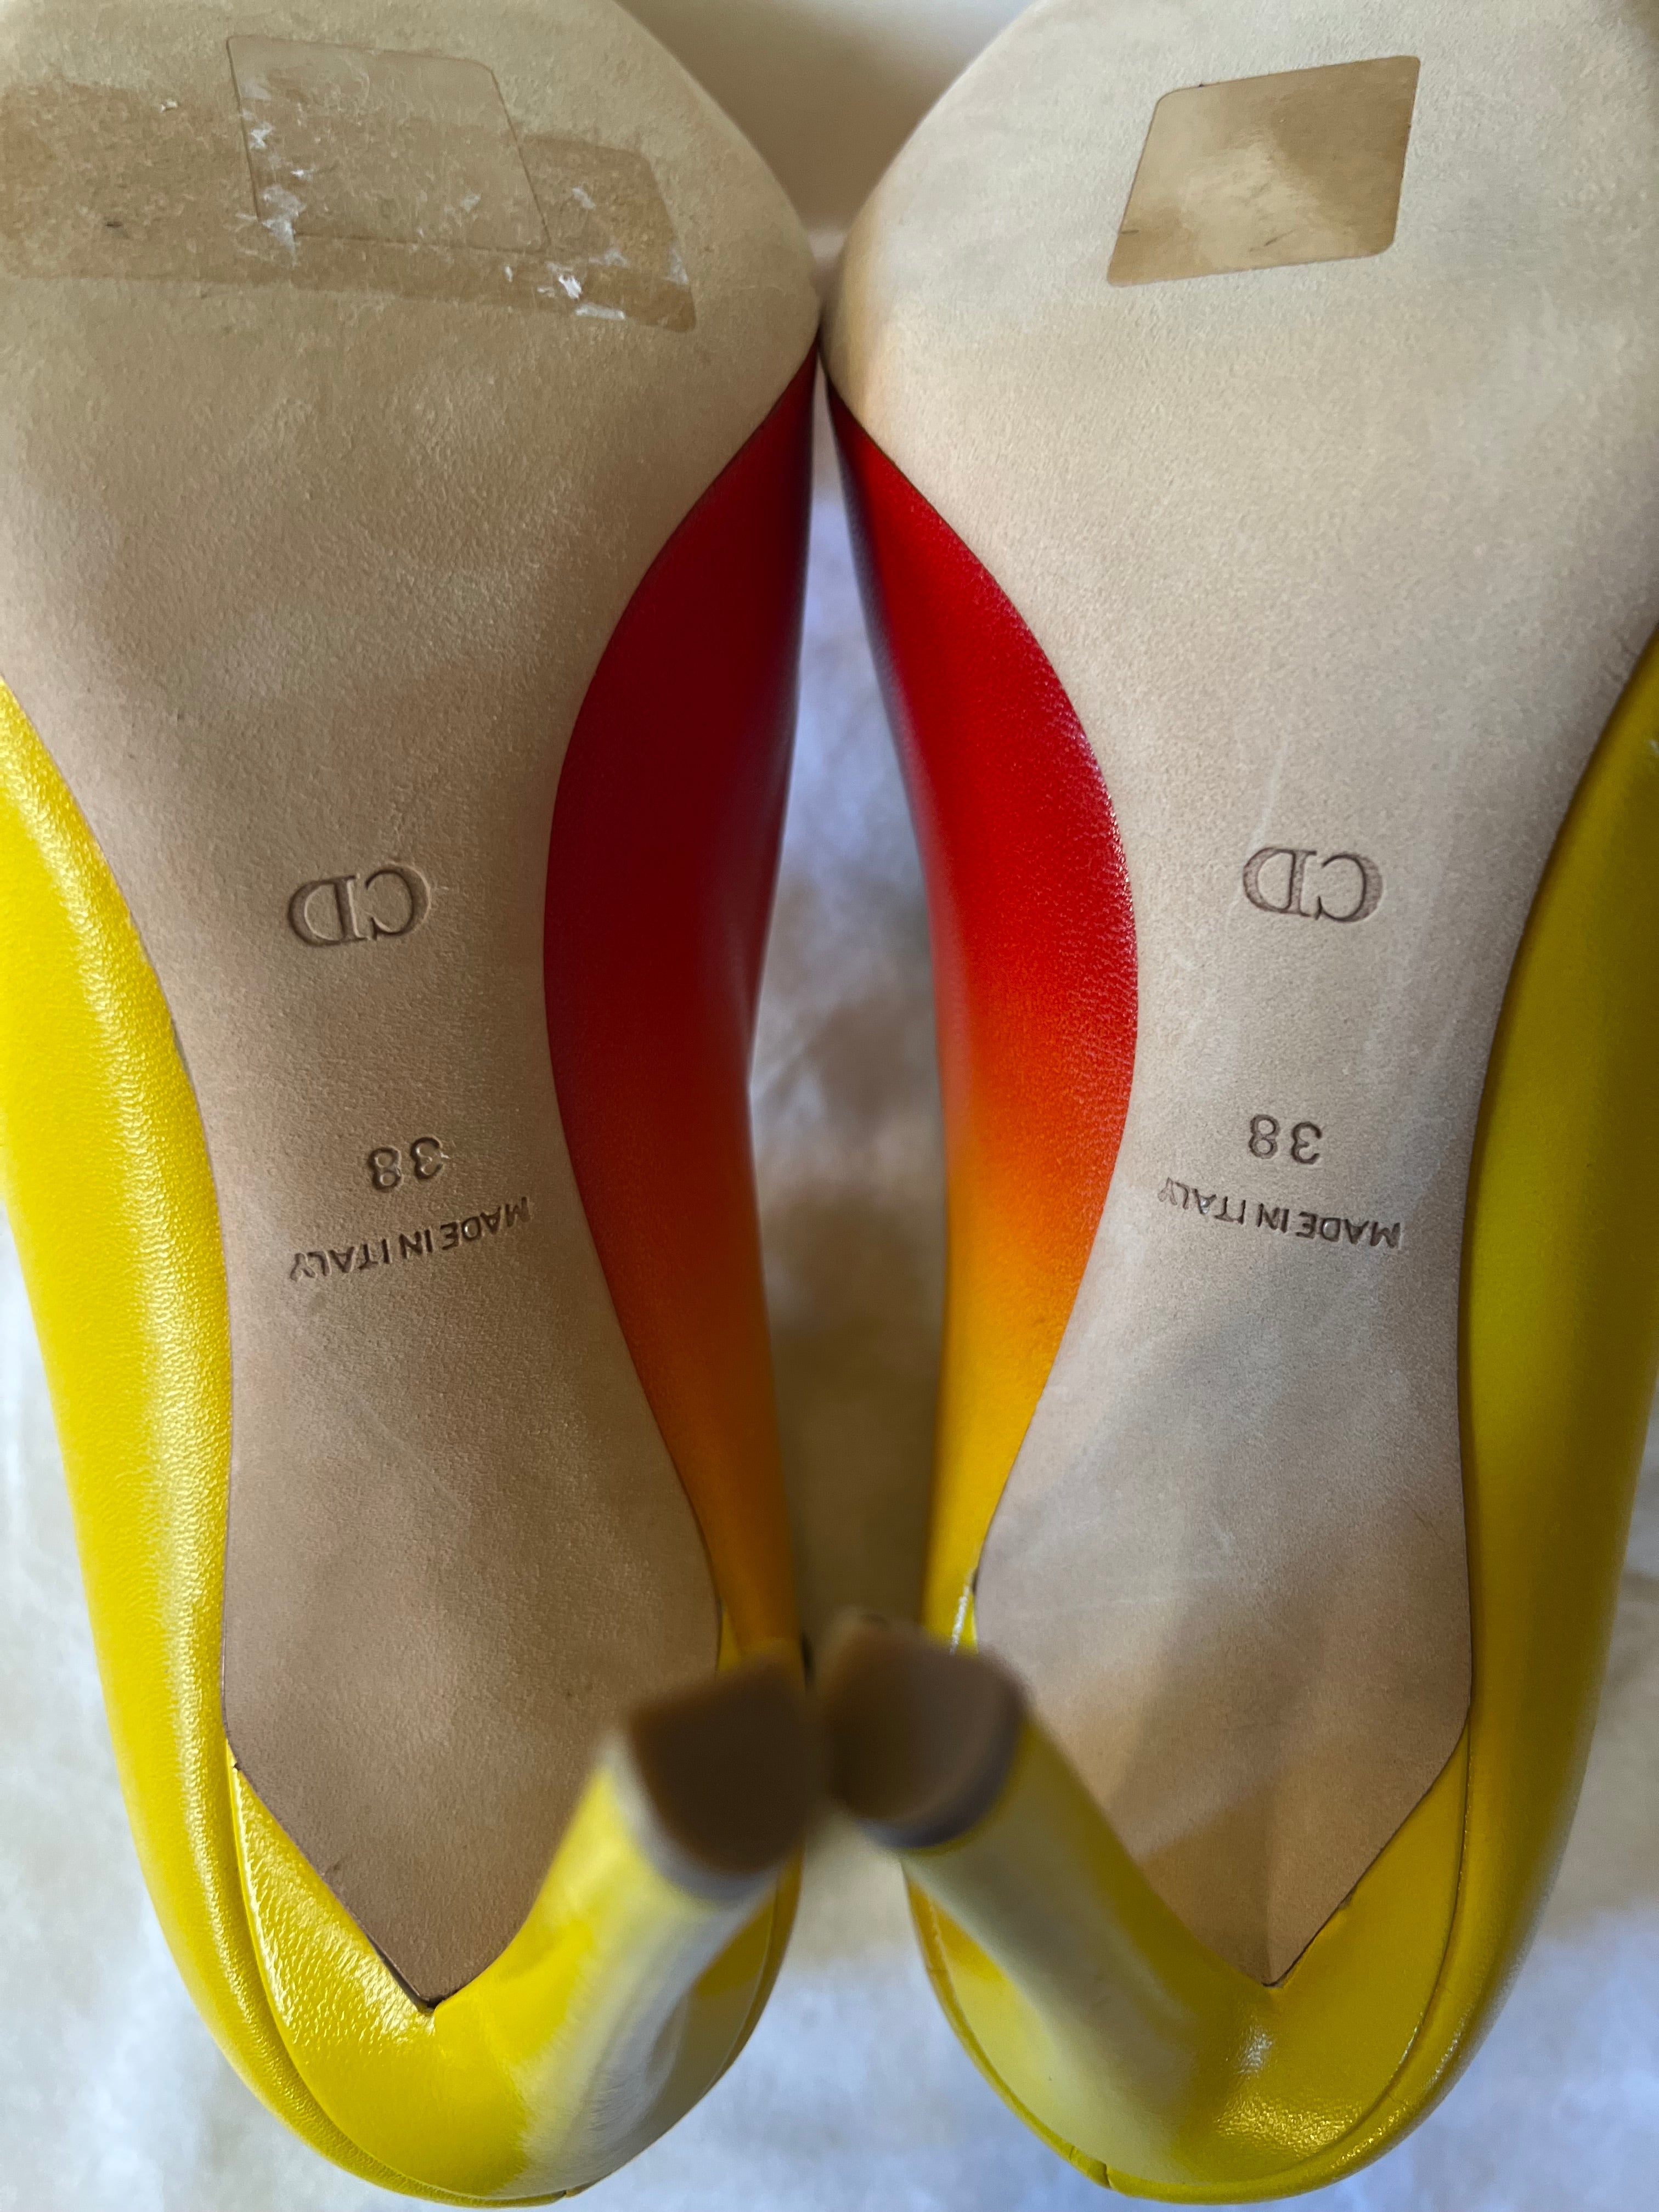 Escarpins Neufs Christian Dior rouge et jaune